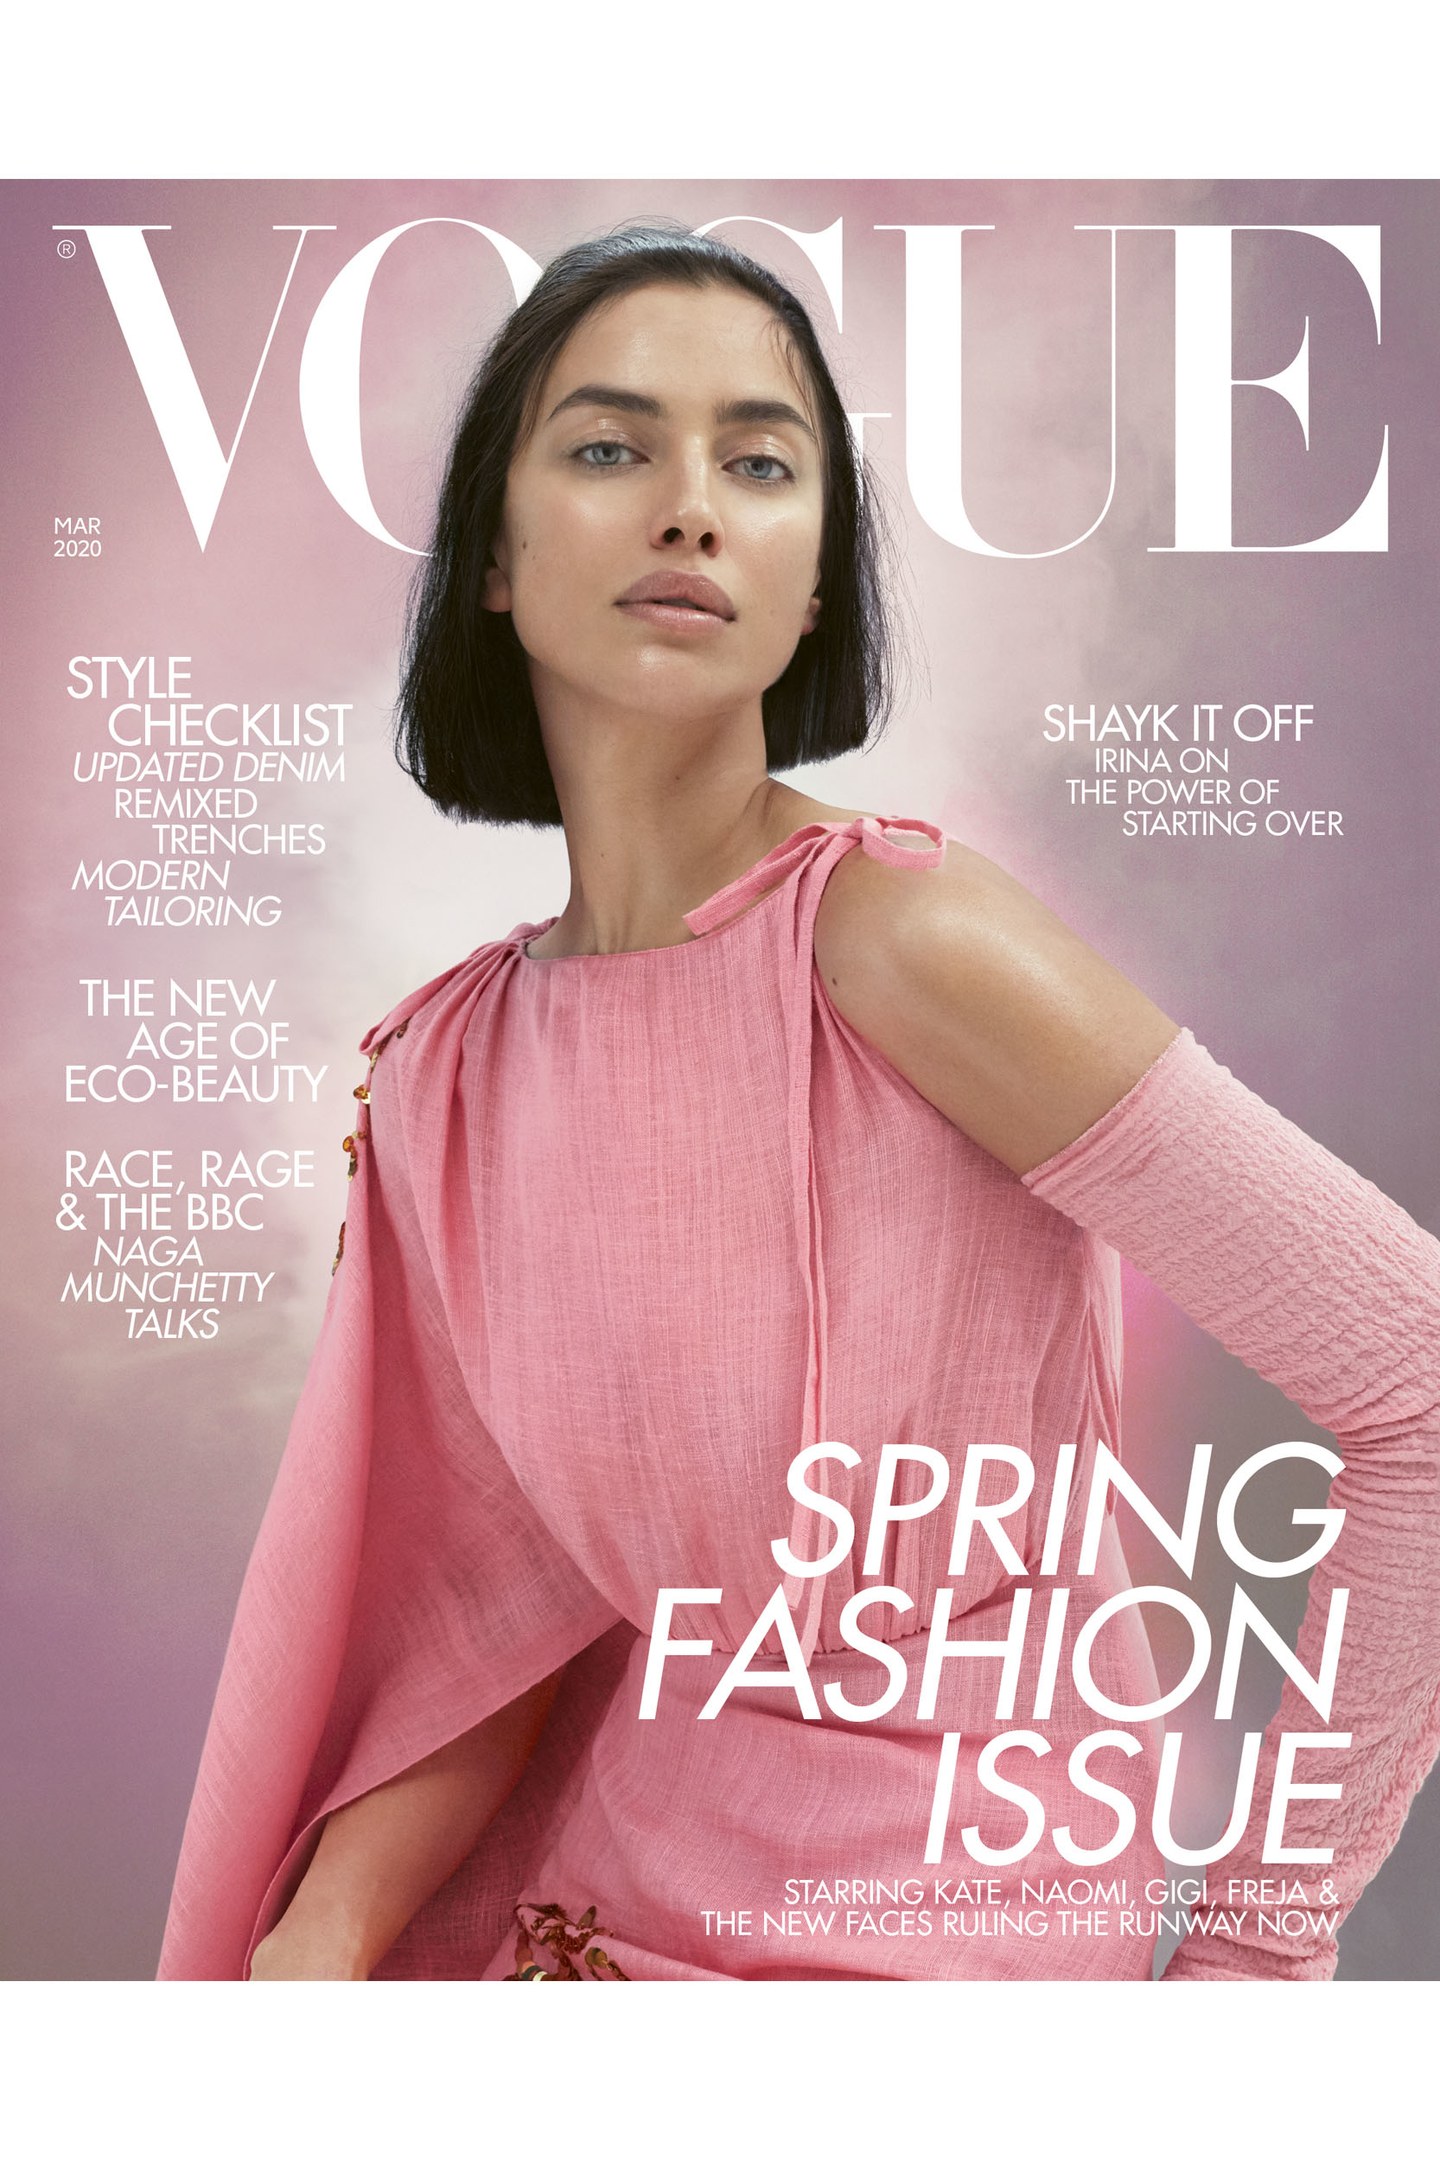 Αυτές οι λάμψεις της Irina Shayk στο εξώφυλλο της Vogue ΔΕΝ είναι highlighter! Είναι αυτό το προϊόν!